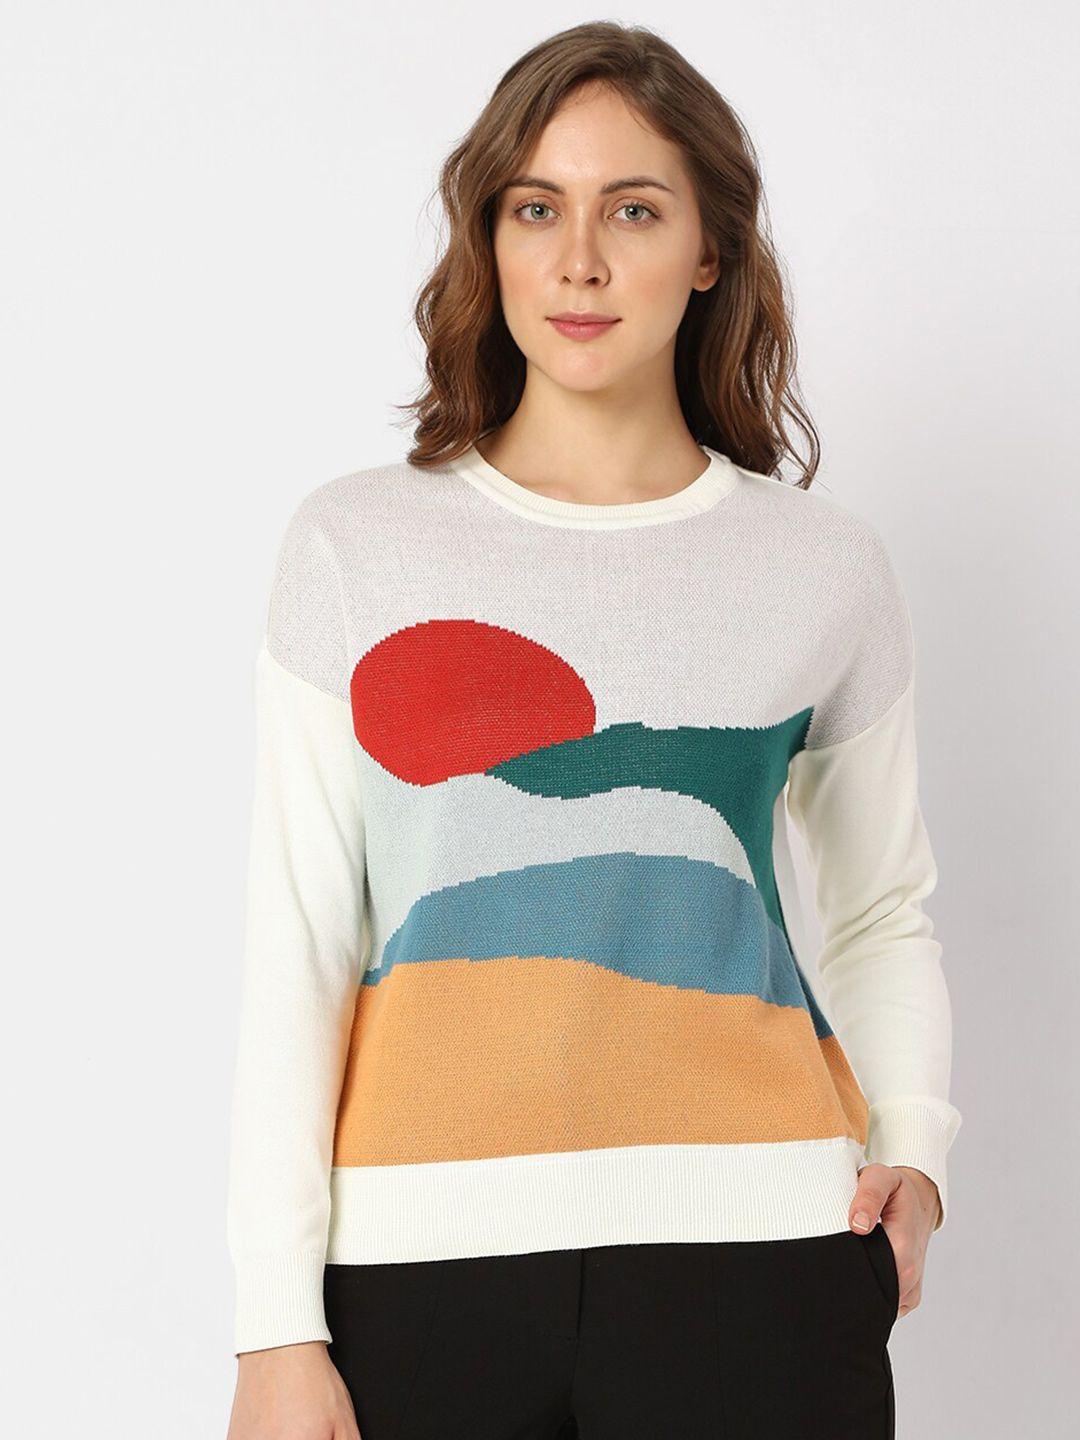 vero-moda-women-graphic-printed-cotton-pullover